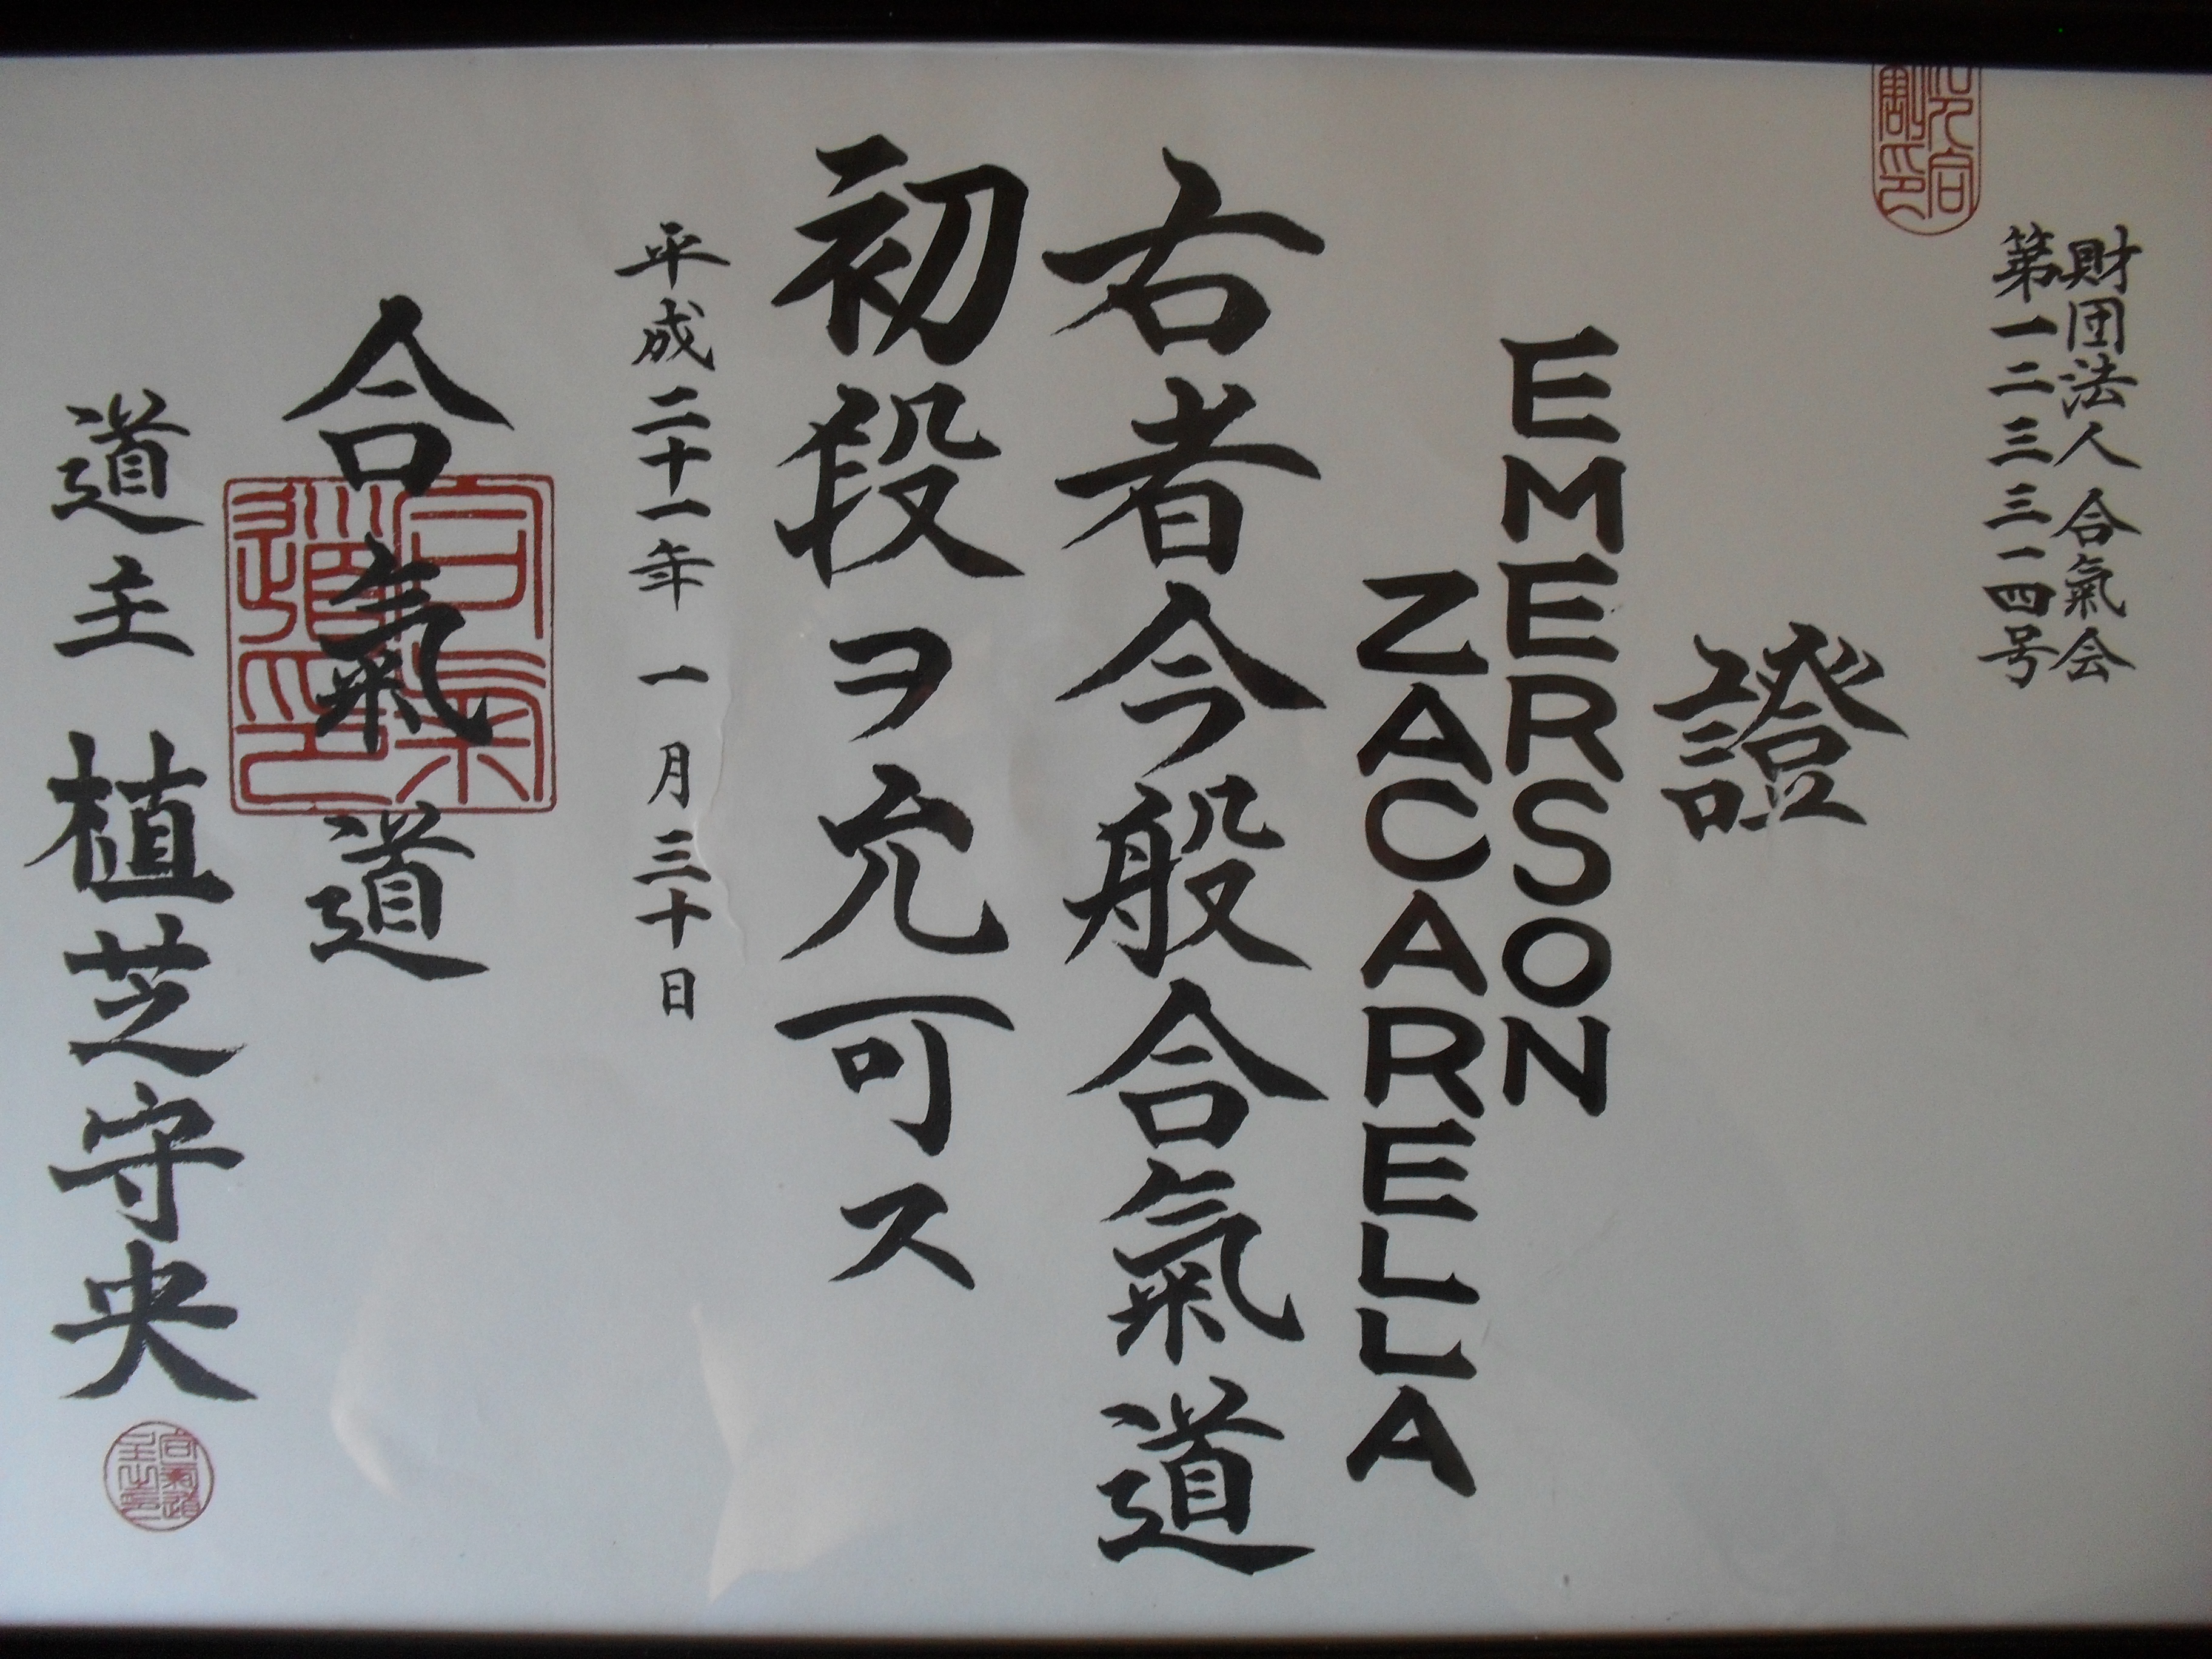 Certificado emitido pelo Hombu Dojo - Sede Mundial do Aikido, localizado em Tóquio, Japão